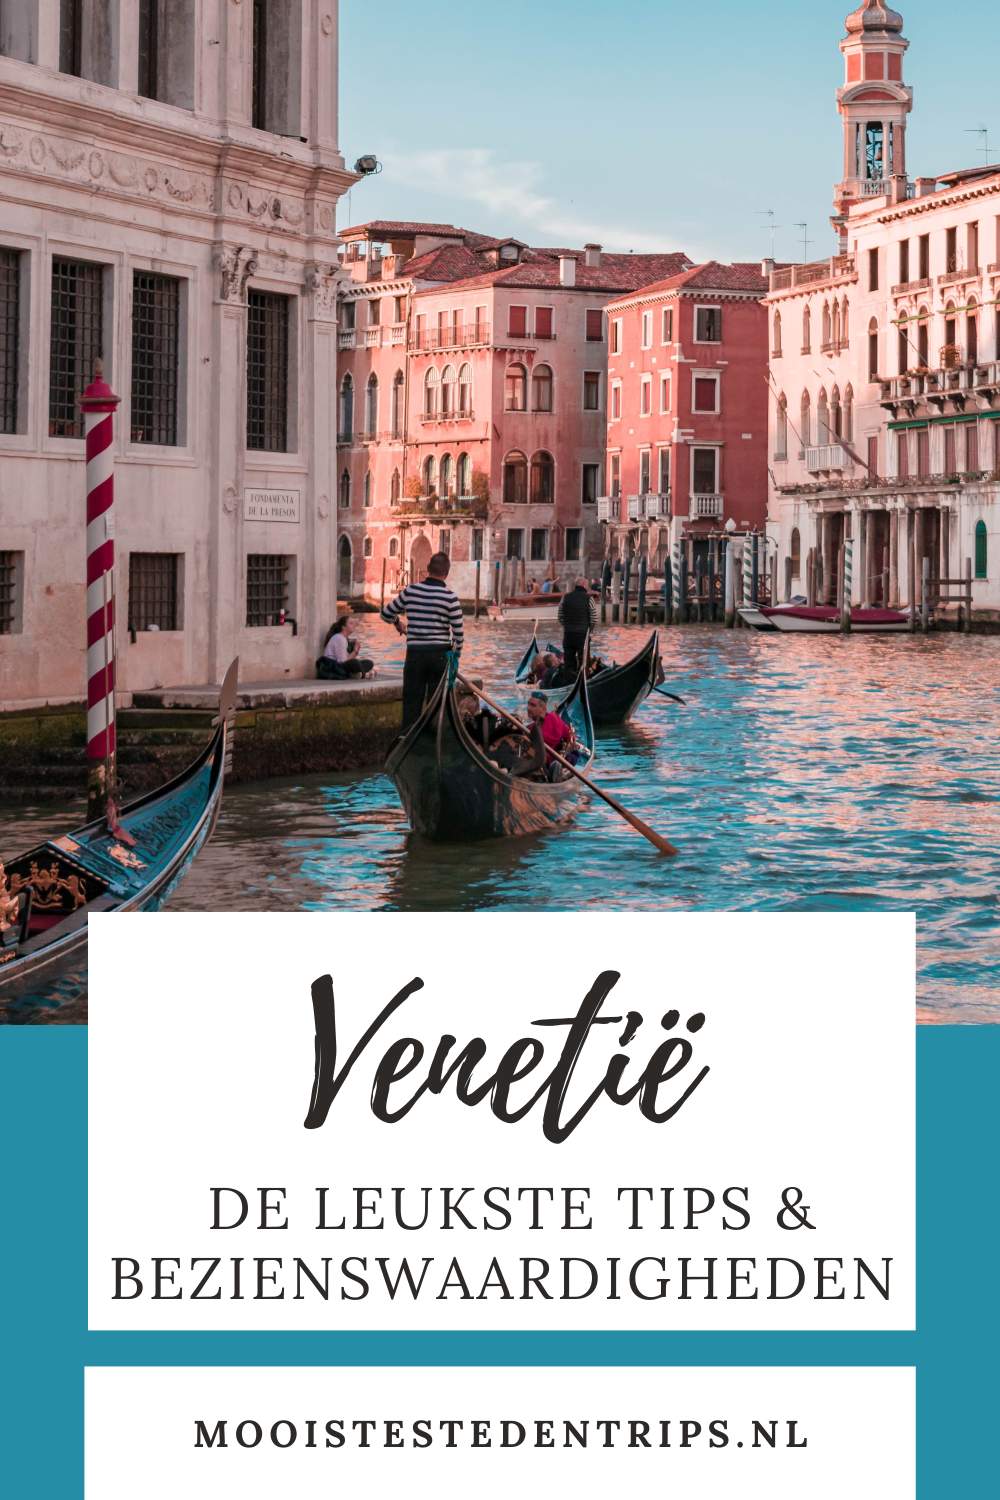 Stedentrips Venetië: wat te doen in Venetië? Ontdek de mooiste bekende en onbekende bezienswaardigheden in Venetië | Mooistestedentrips.nl